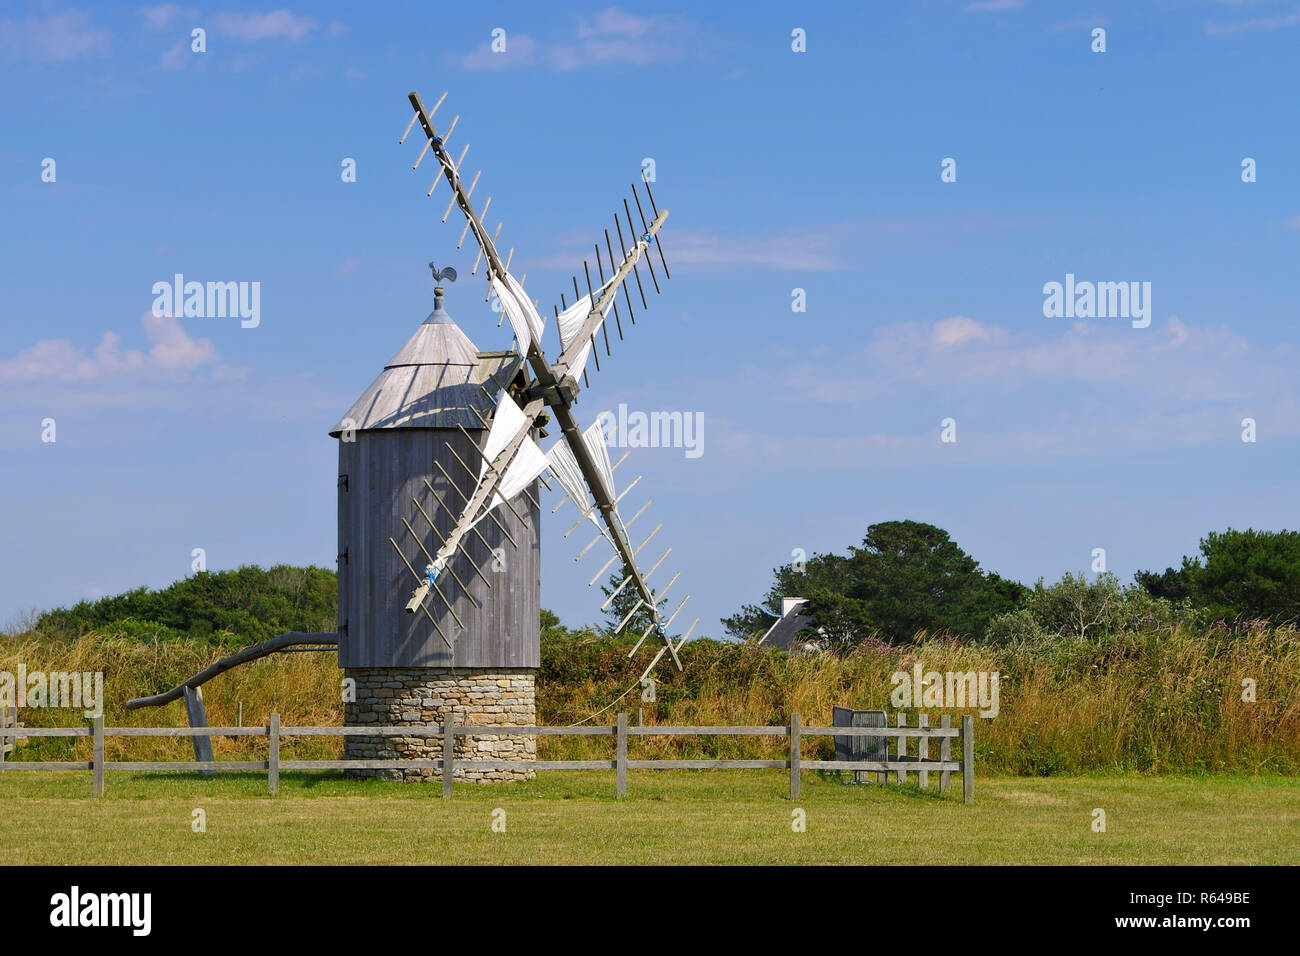 Moulin de trouguer windmill in Bretagna - moulin de trouguer windmill in Bretagna,Francia Foto Stock